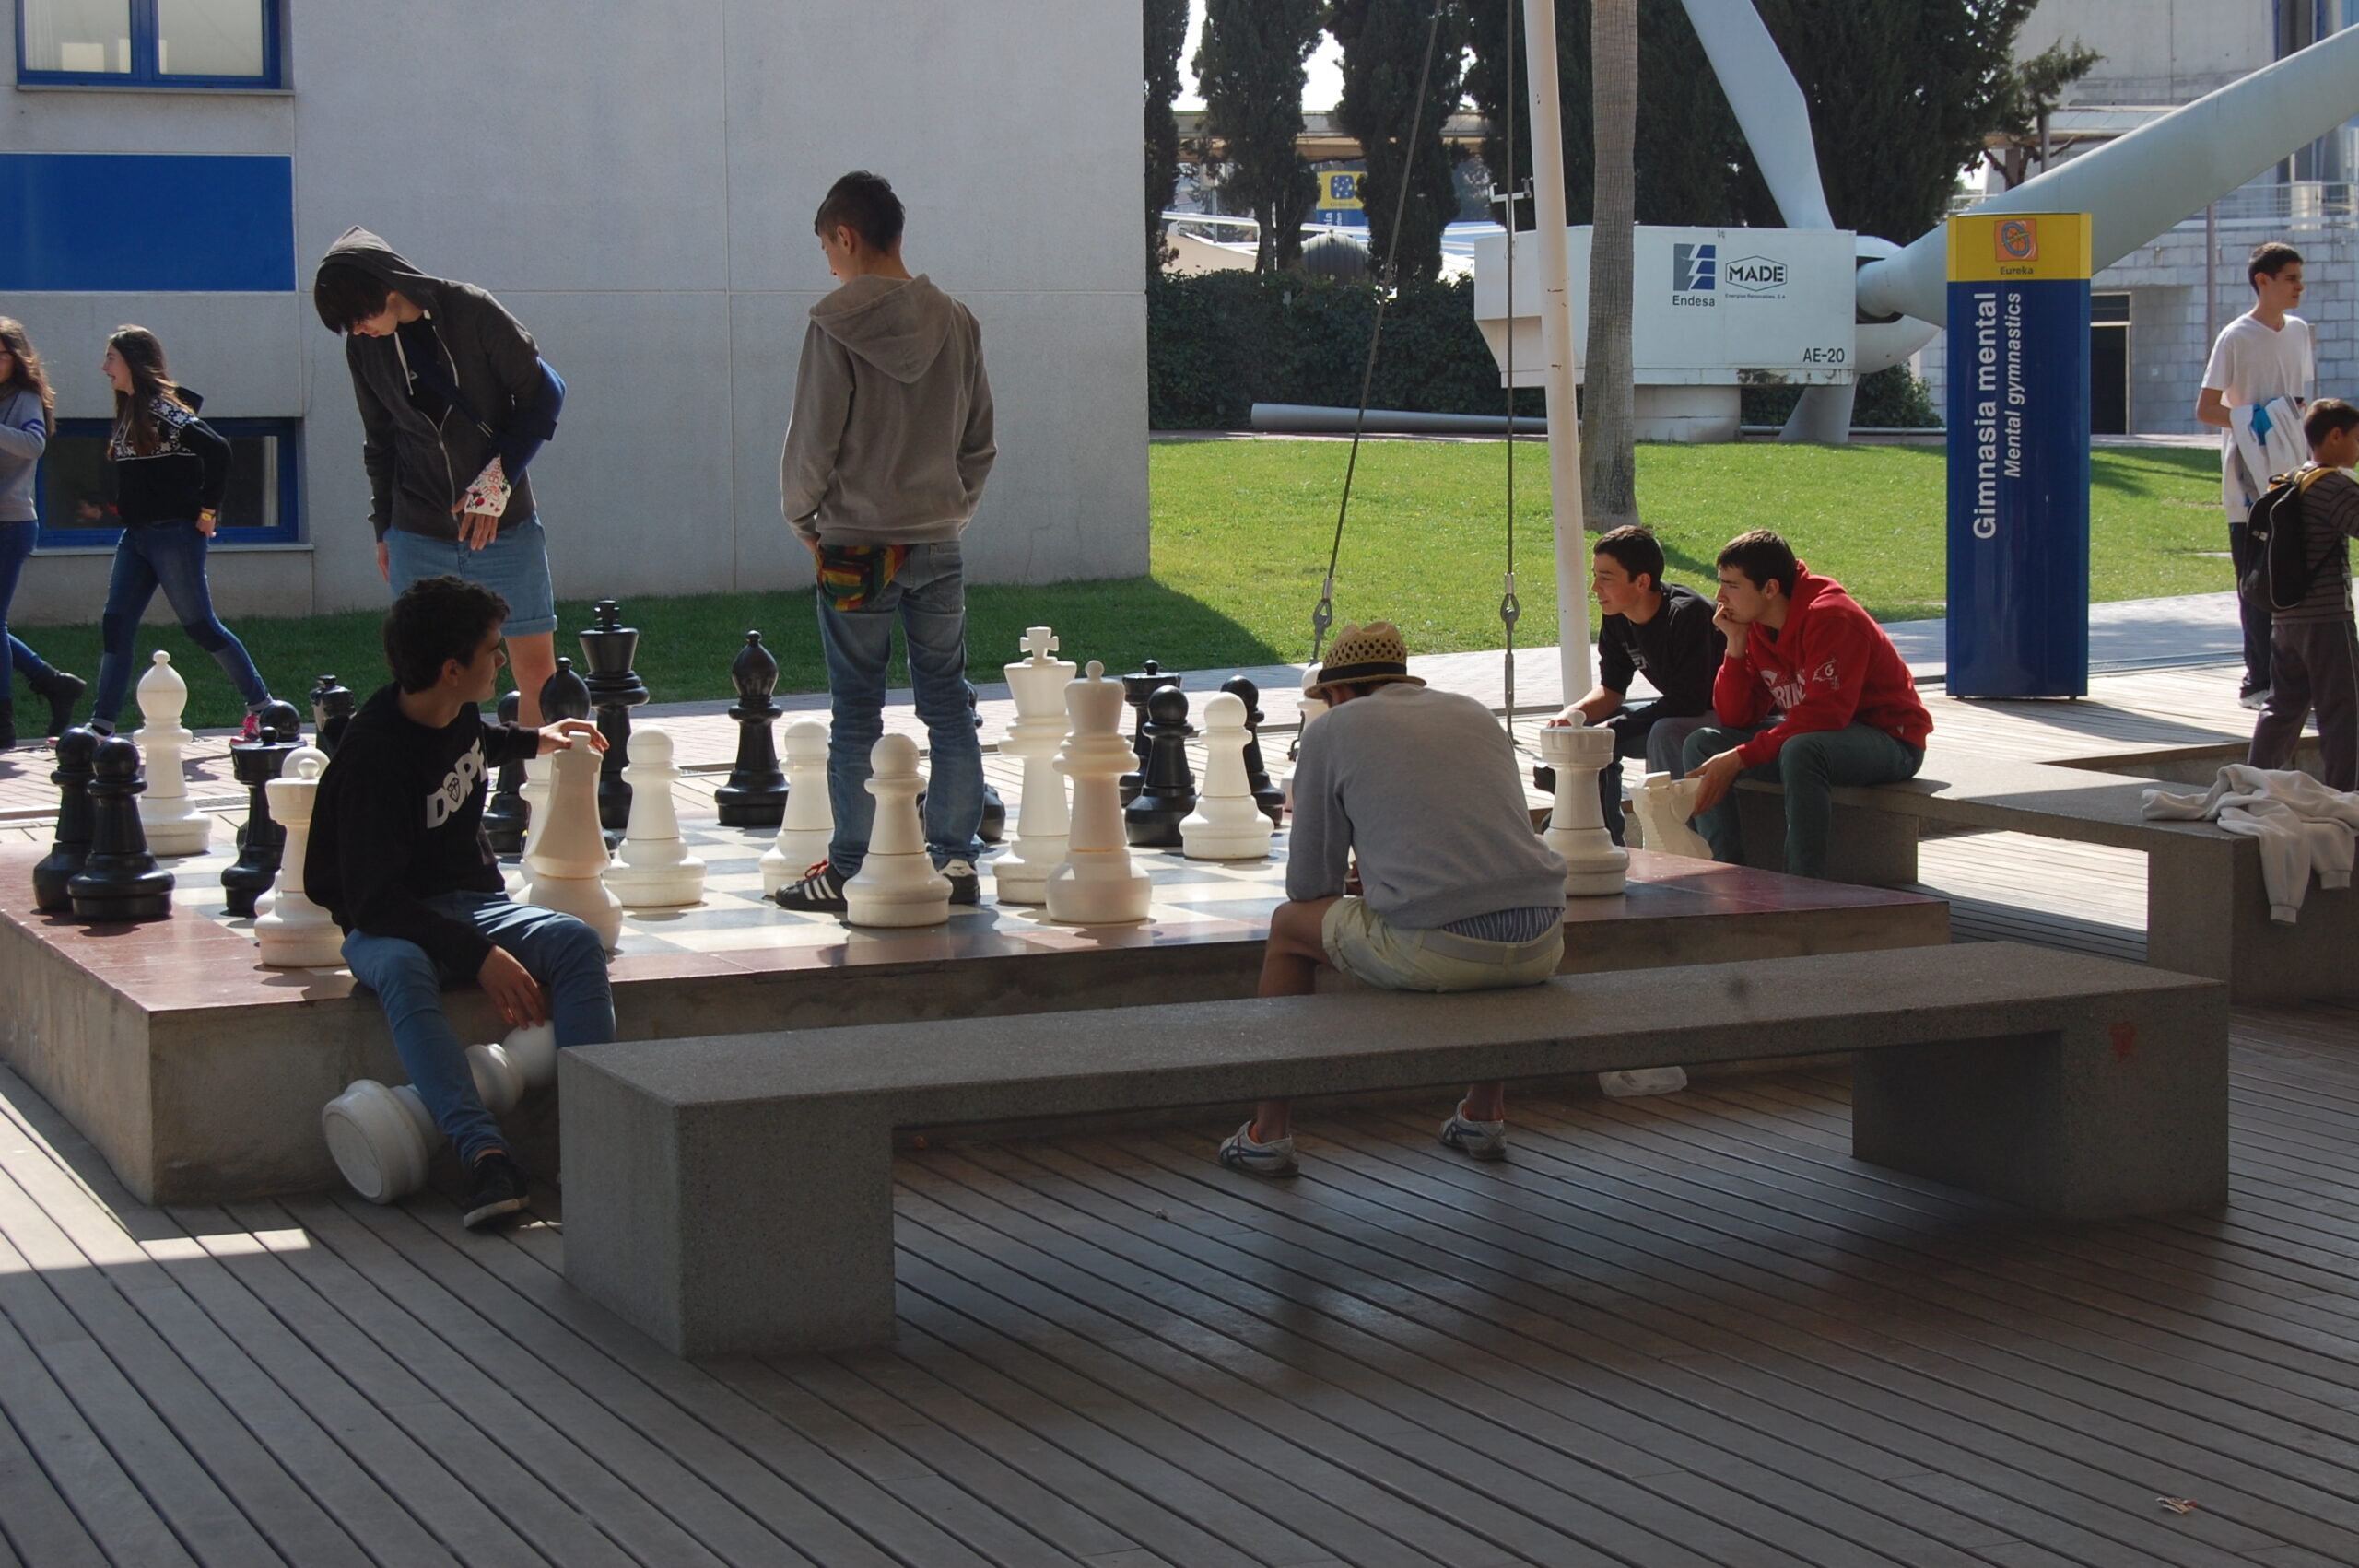 Escolares granadinos juegan 220 partidas de ajedrez en menos de tres horas  - Parque de las Ciencias de Andalucía - Granada